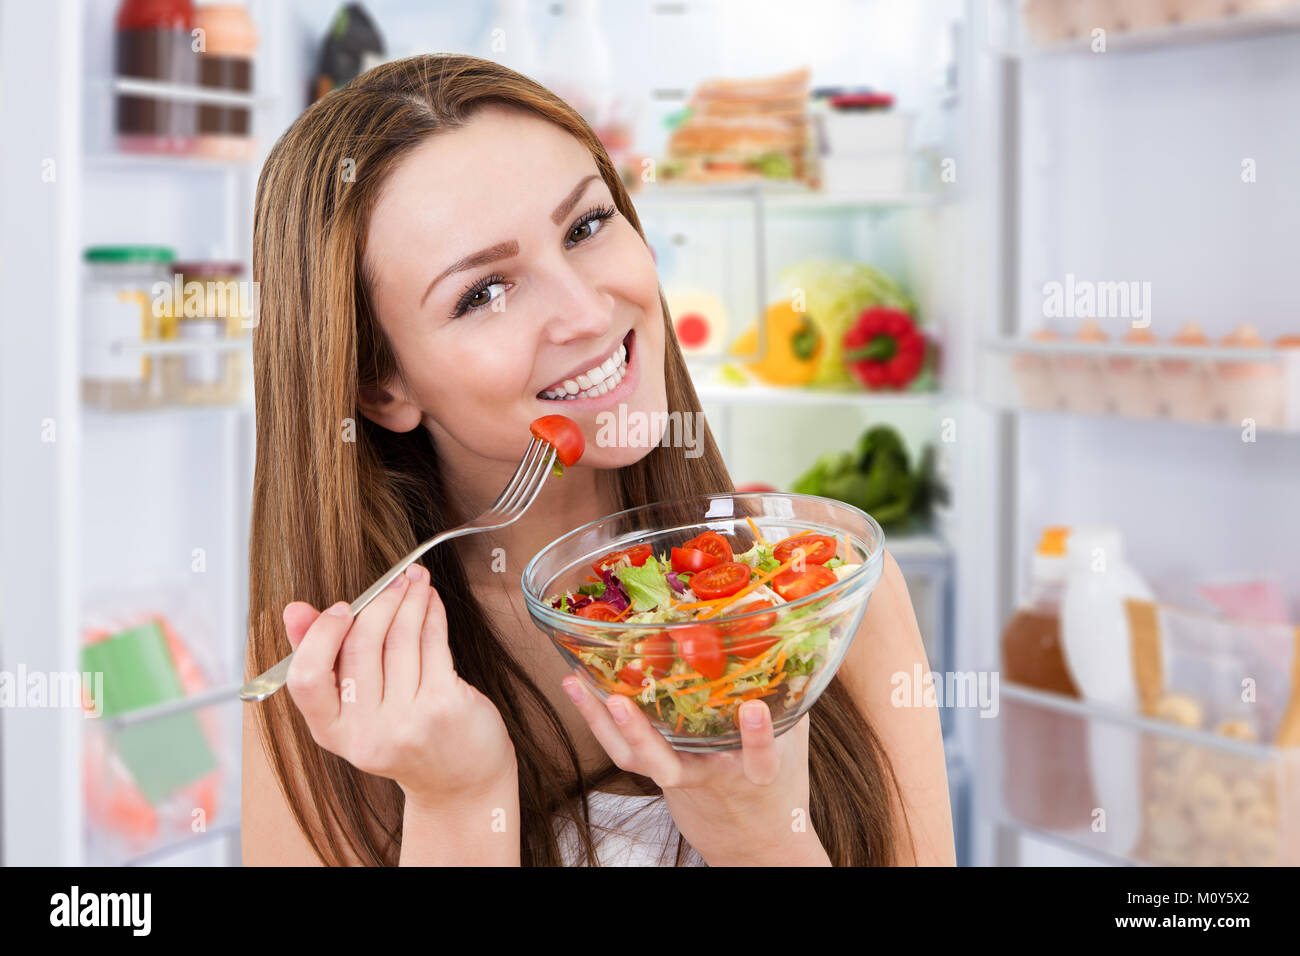 Portrait der junge lächelnde Frau das Essen von frischem gesunden Salat Stockfoto